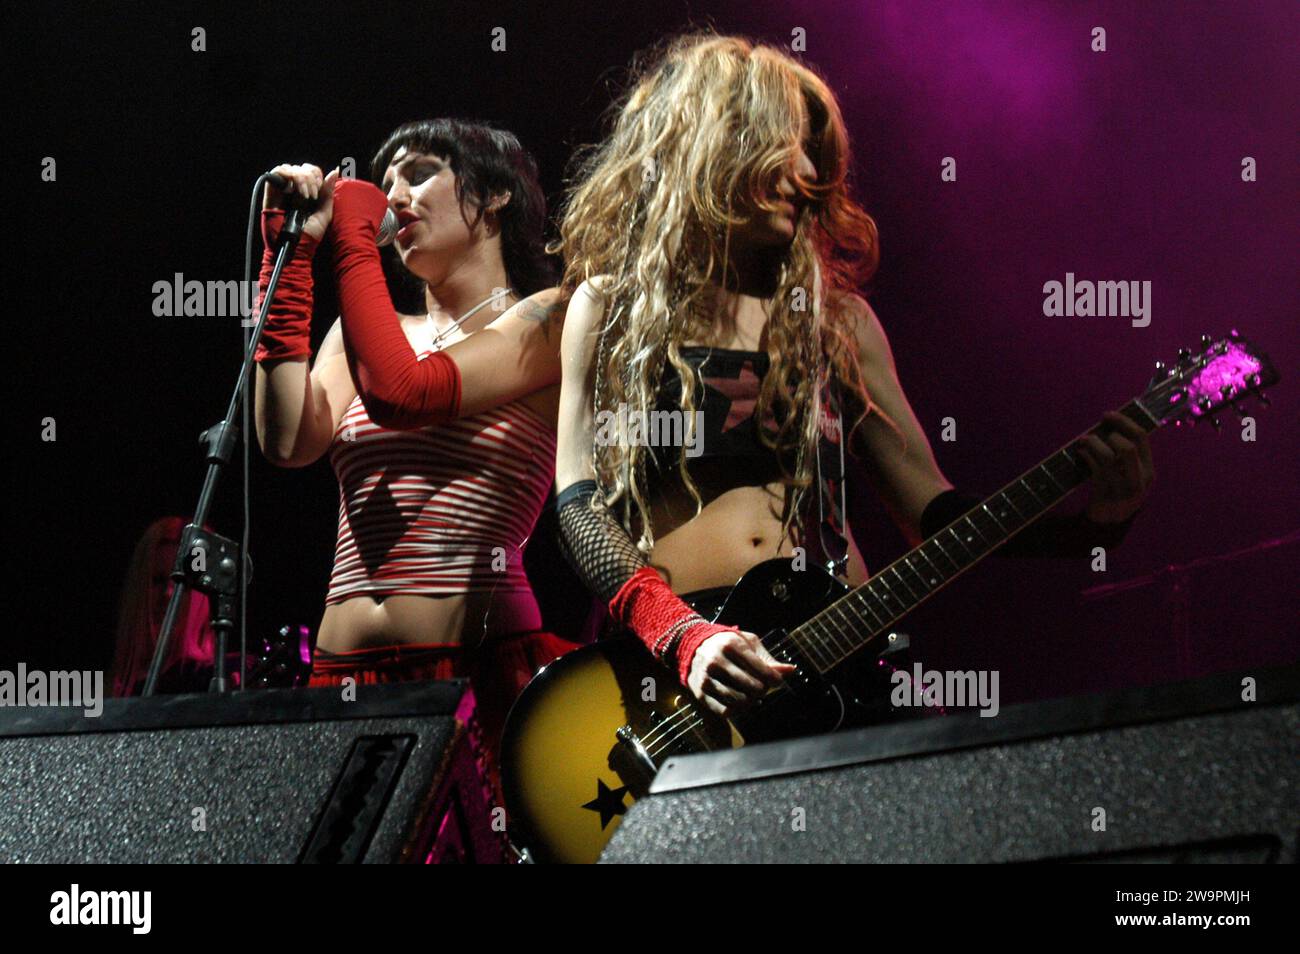 Milano italia 2003-05-09:Micky Paiano e Morgana Blue delle bambole di pezza, gruppo musicale femminile pop punk italiano, durante il concerto dal vivo al Pala Madza Foto Stock